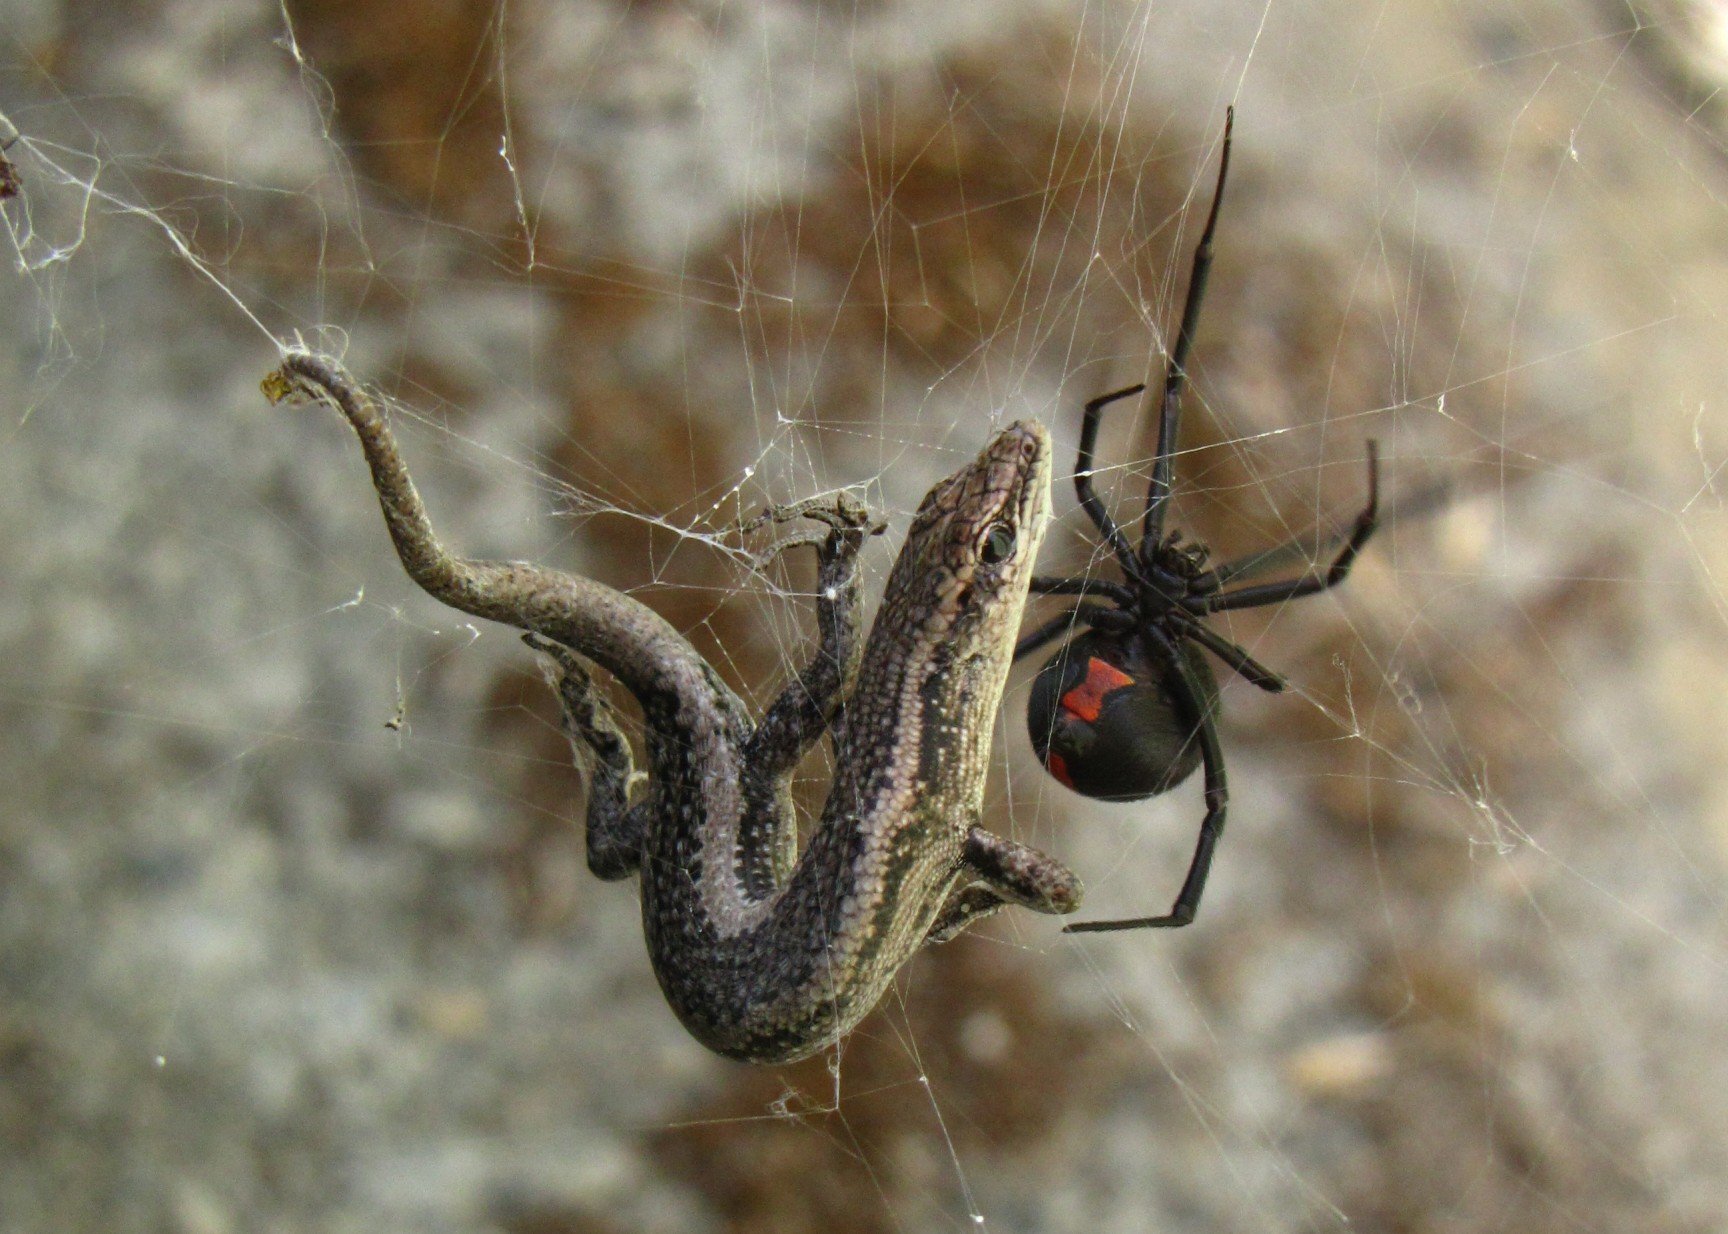 Spider armla sewda qabad gremxula żgħira